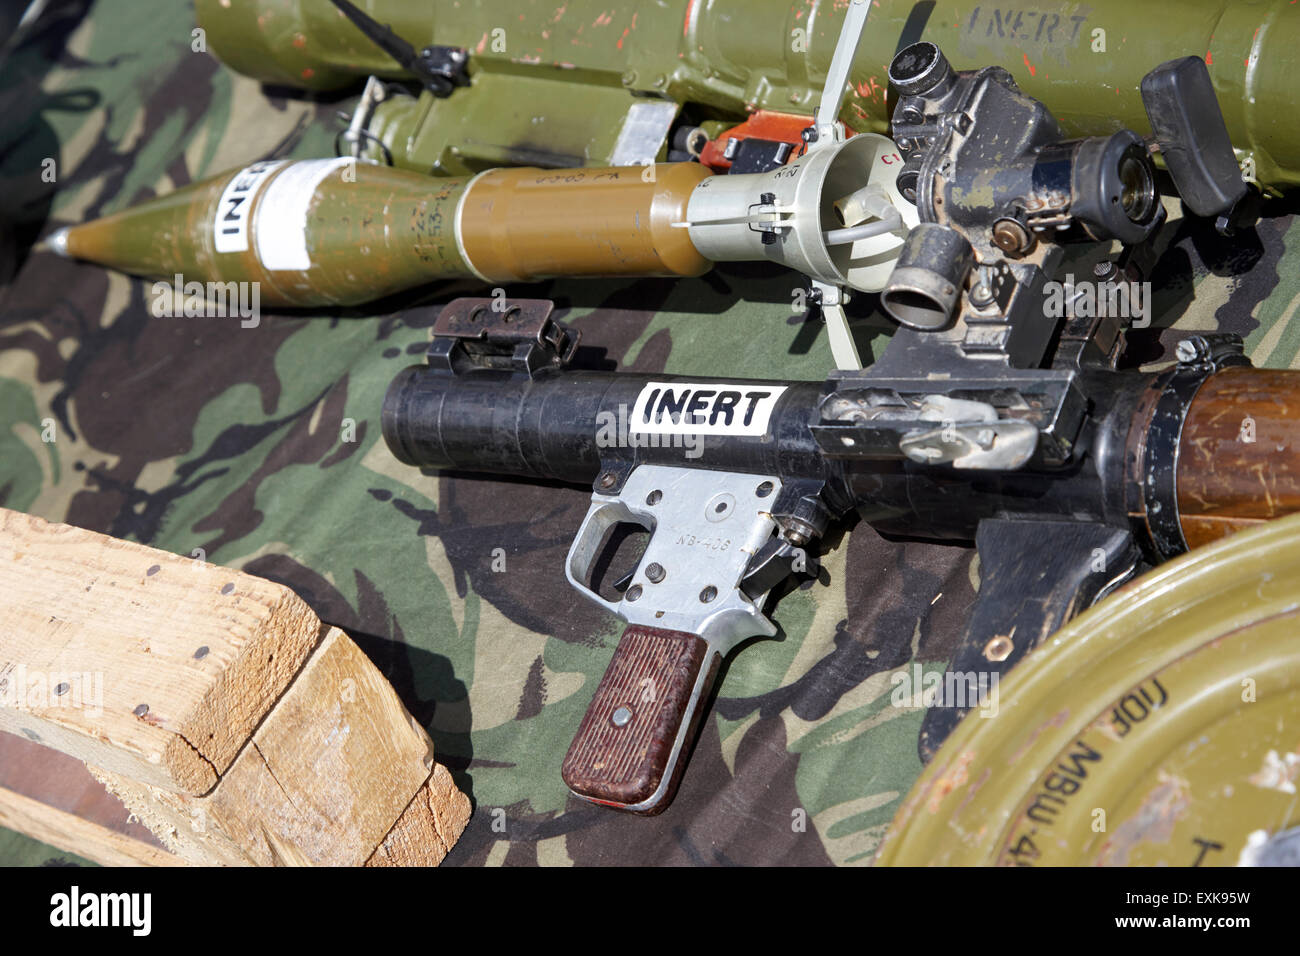 Granada propulsada por cohete RPG inerte utilizado para propósitos de entrenamiento militar recuperados de Afganistán Foto de stock